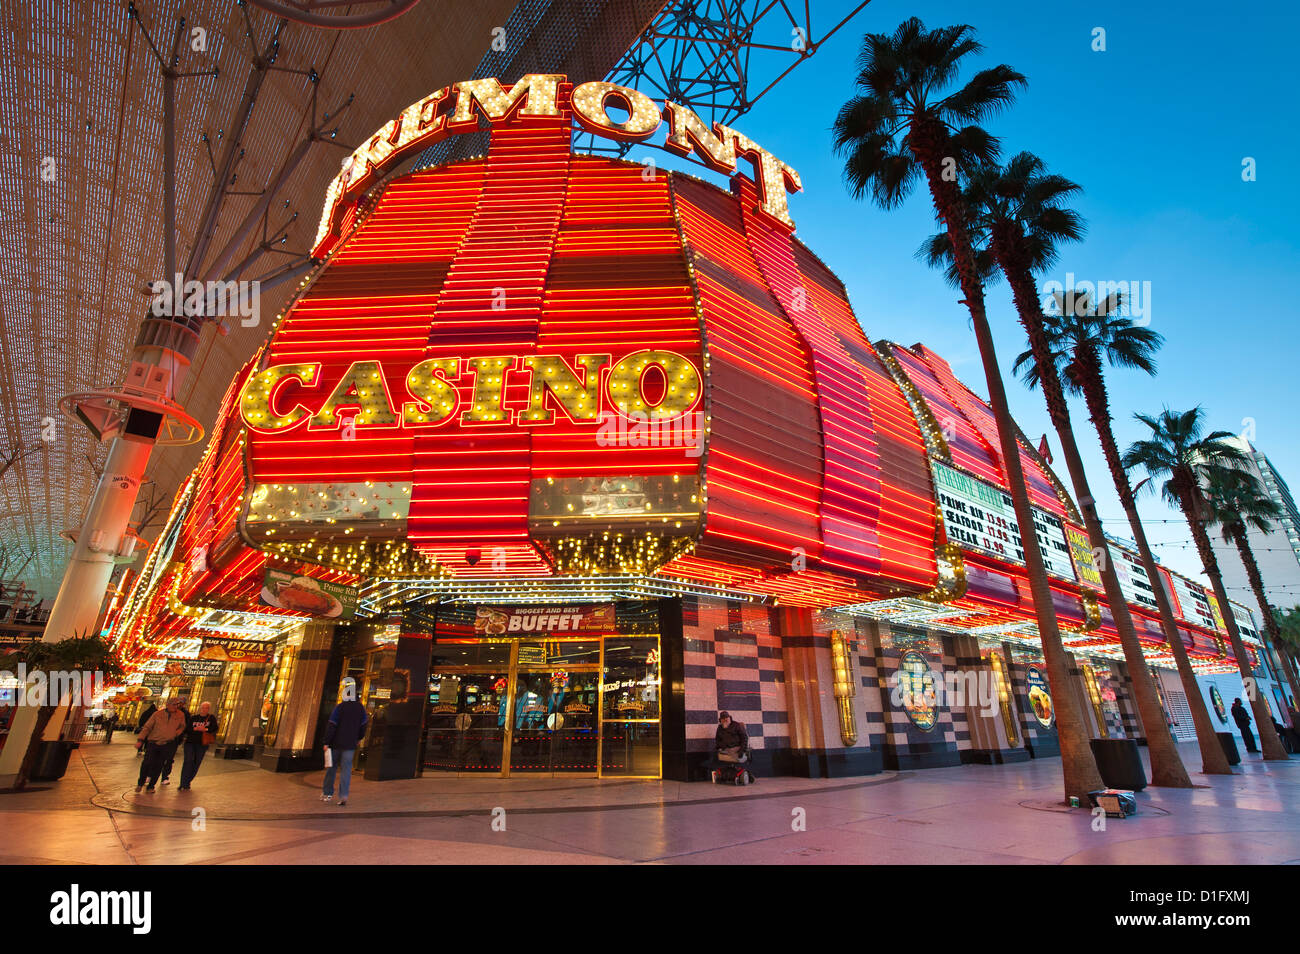 Fremont Casino et de la Fremont Street Experience, Las Vegas, Nevada, États-Unis d'Amérique, Amérique du Nord Banque D'Images